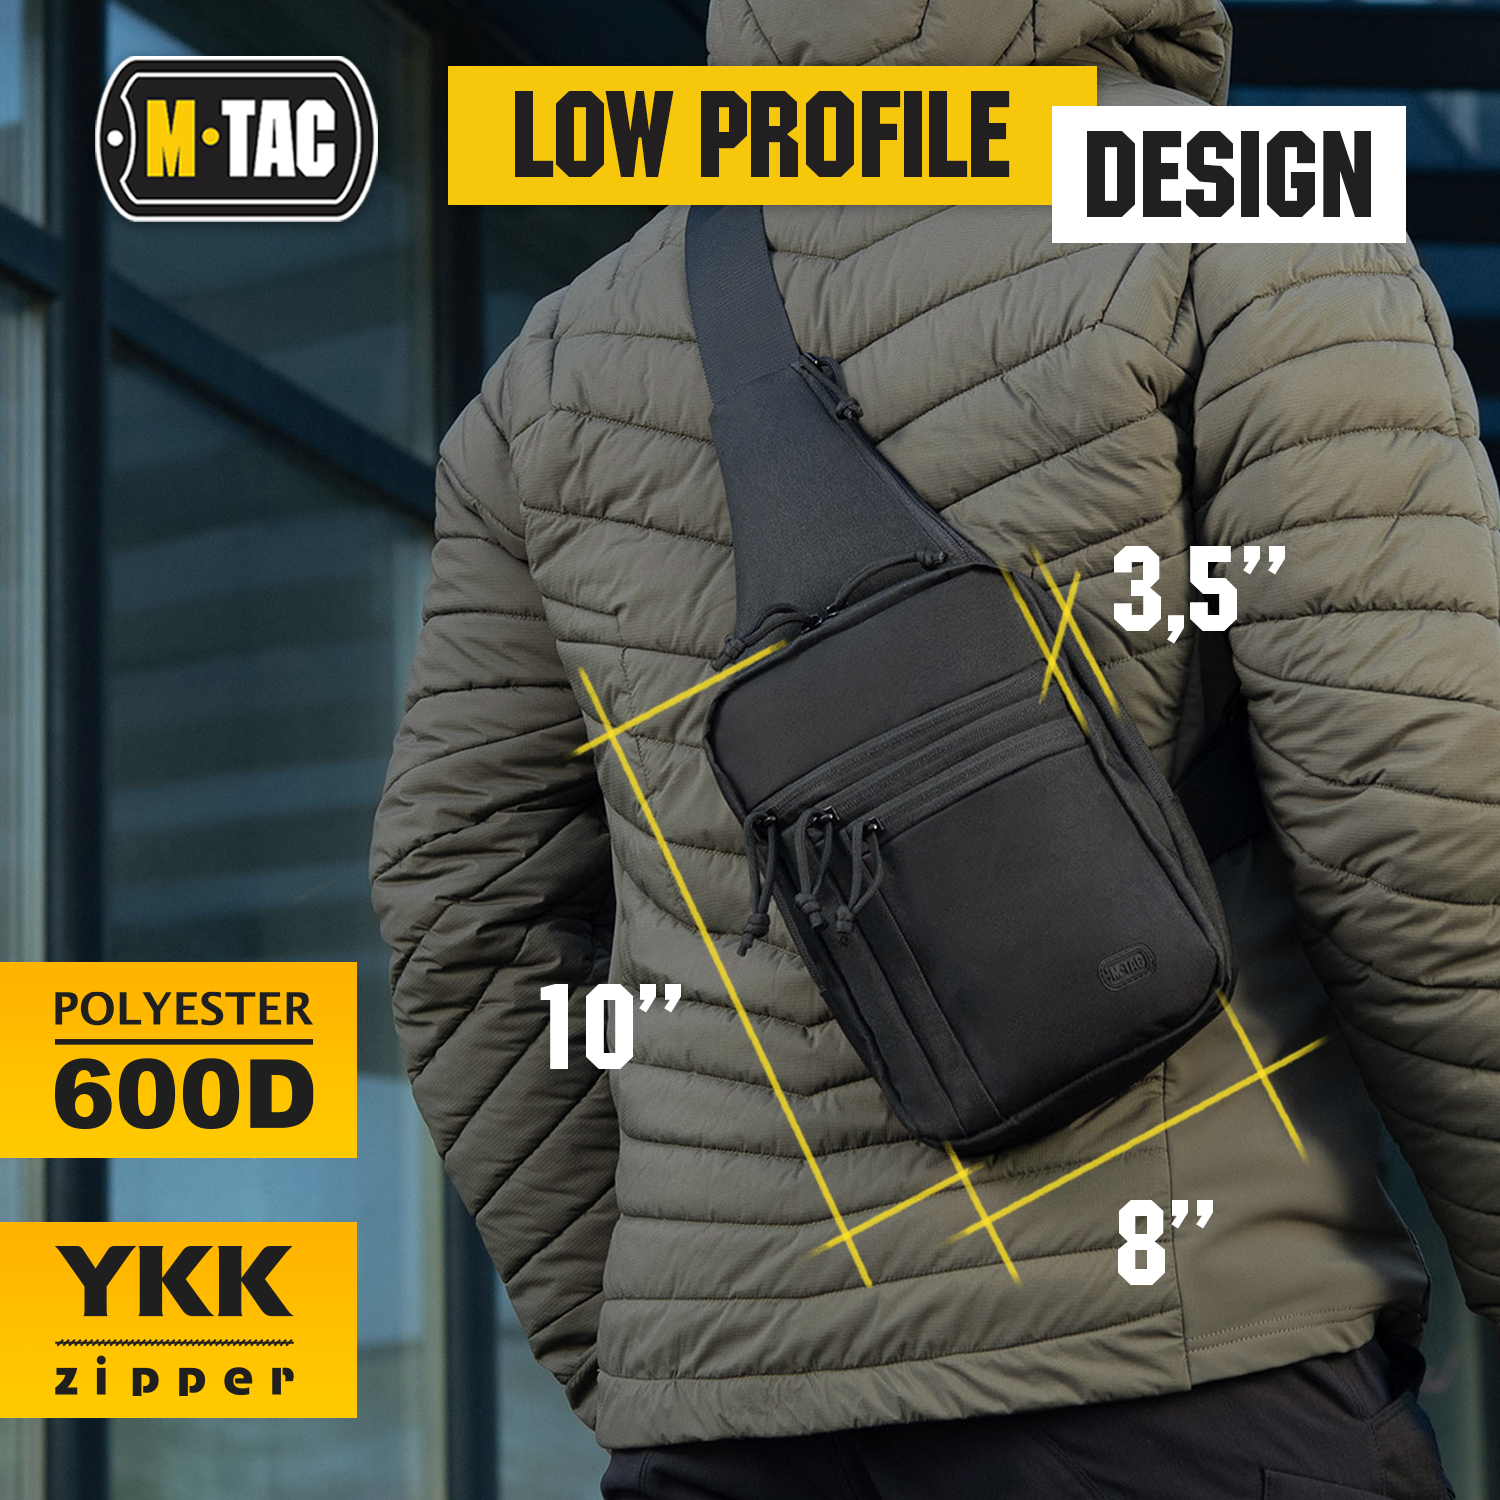 M-Tac Tactical Bag Shoulder Chest Pack with Sling Jean Blue